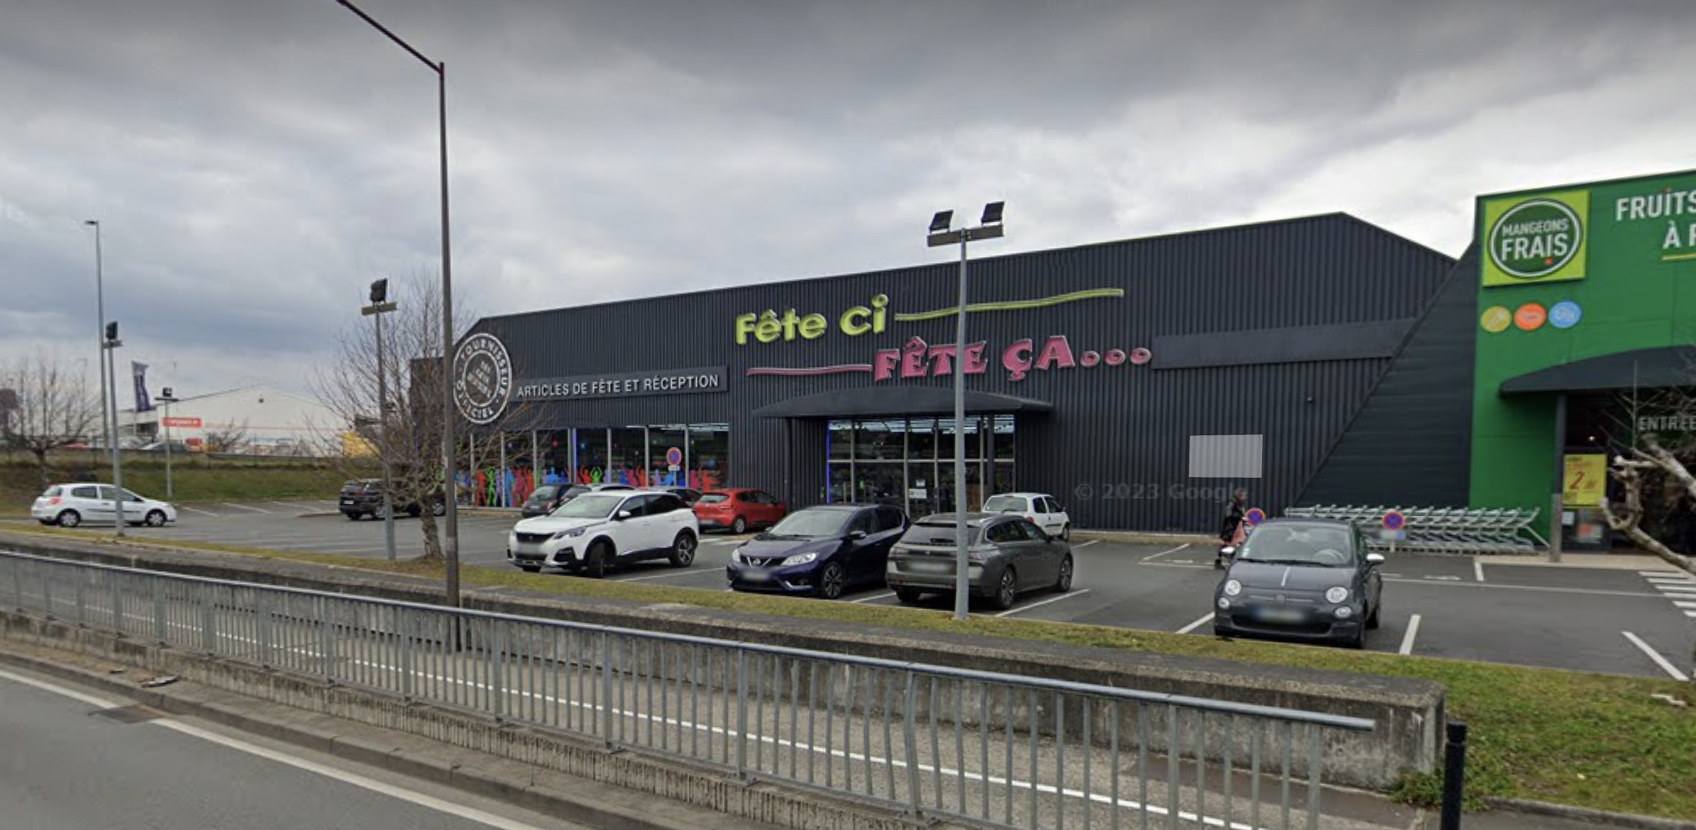 L'ensemble commercial est situé à La Chapelle-Saint-Aubin, au nord de l'agglomération du Mans. ©Google Street View